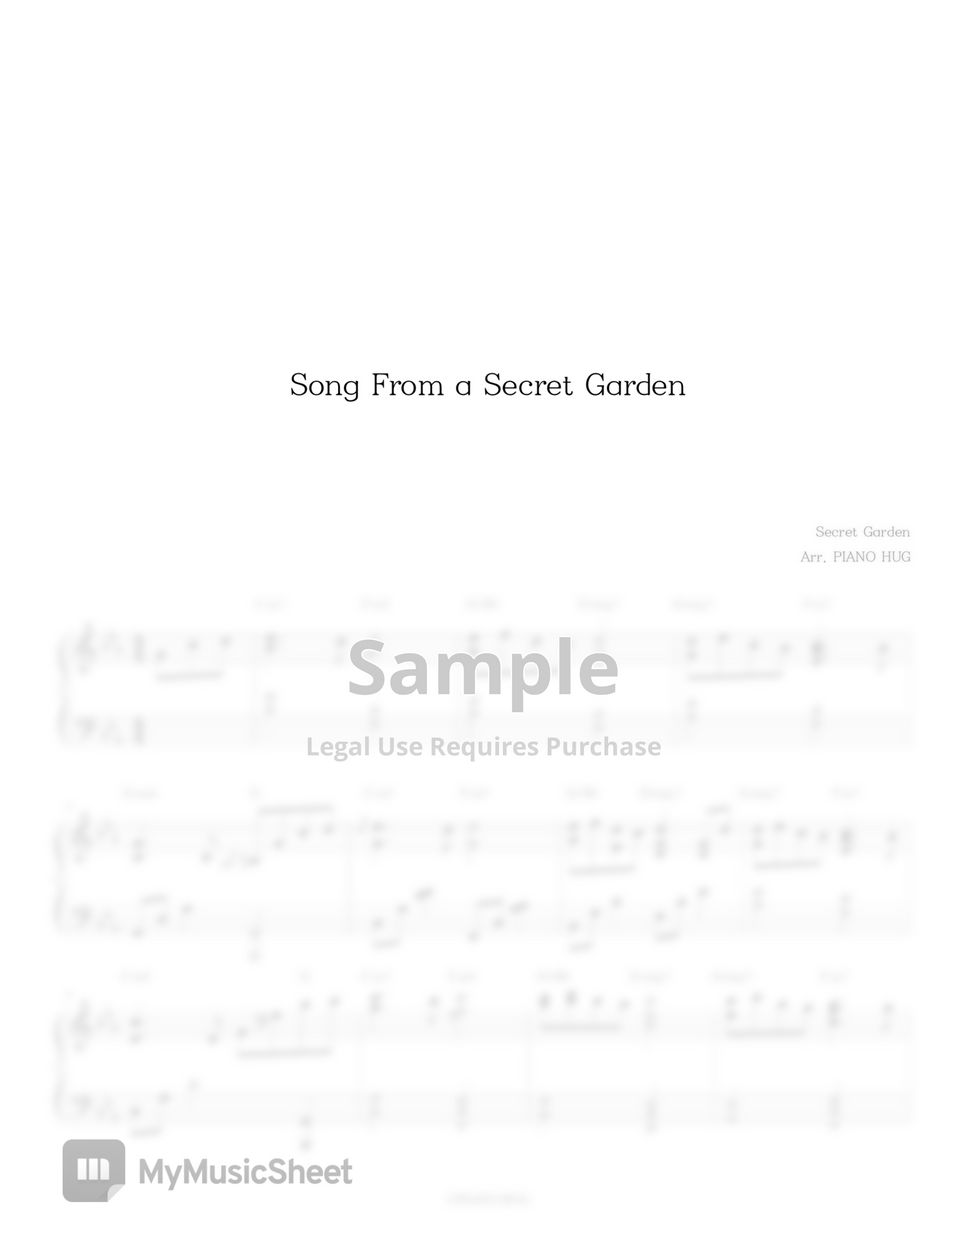 Secret Garden - Song From a Secret Garden by Piano Hug